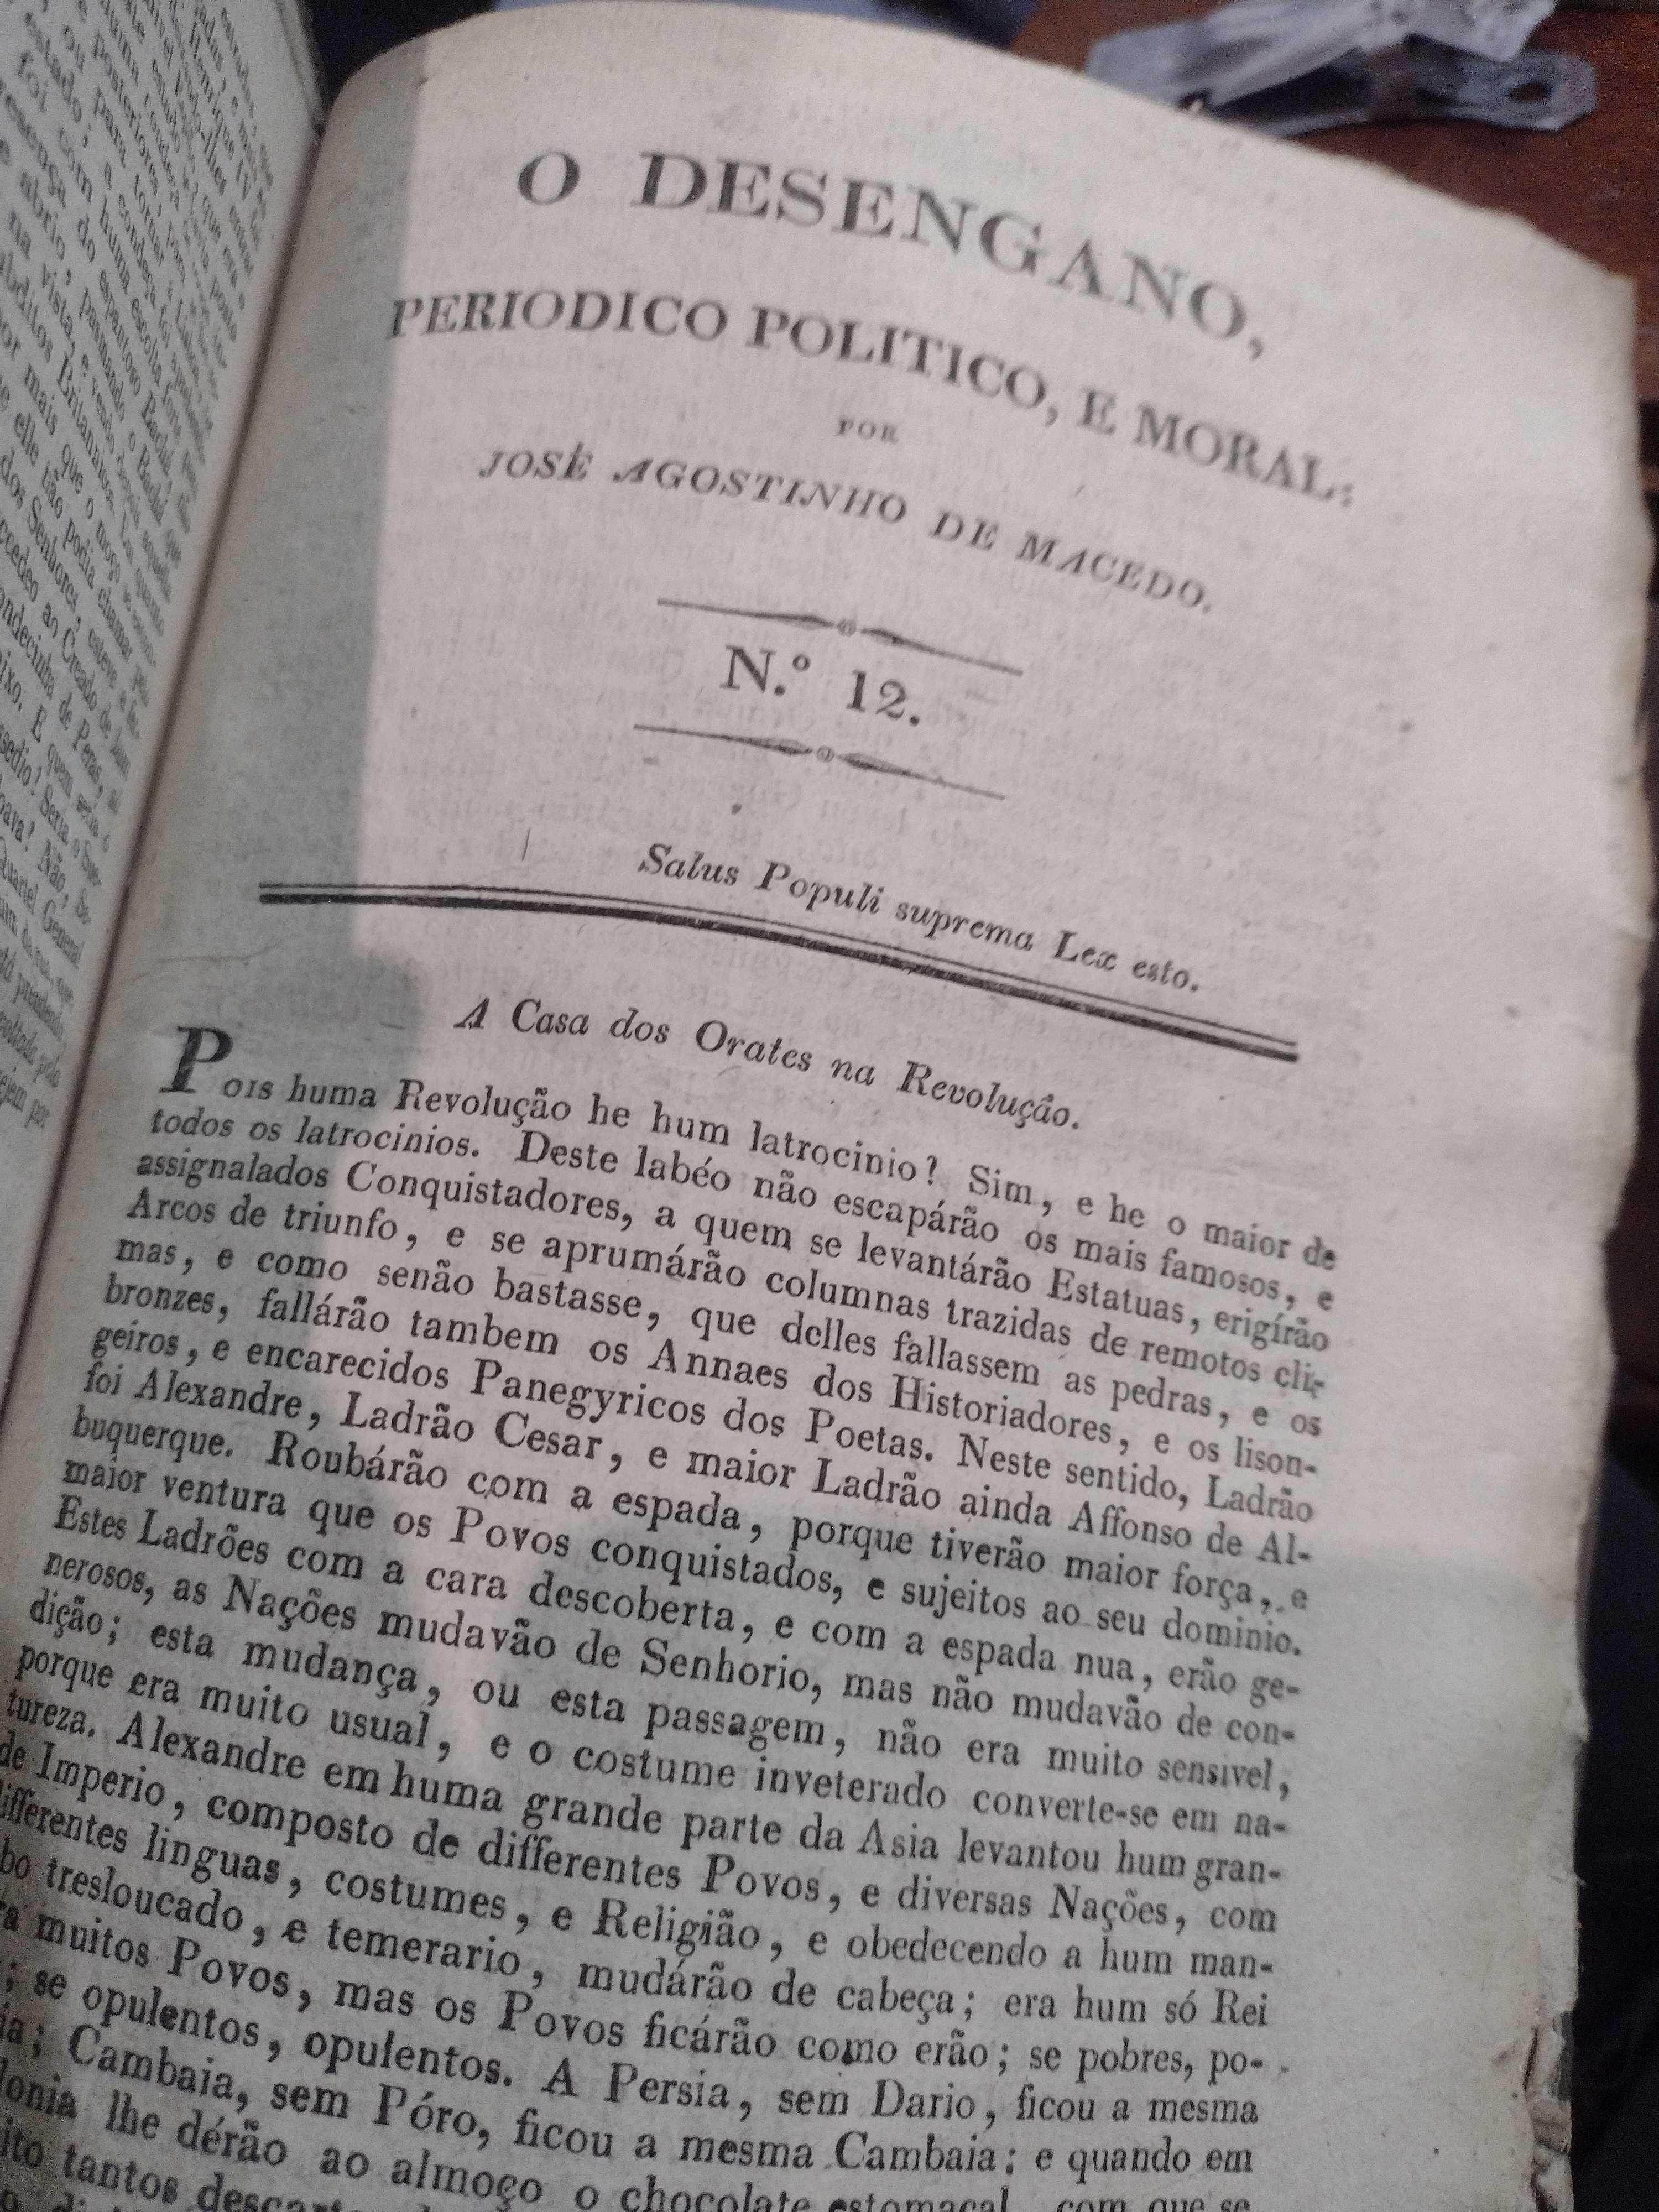 O Desengano Periodico Politico e Moral - 1830 José Agostinho de Macedo